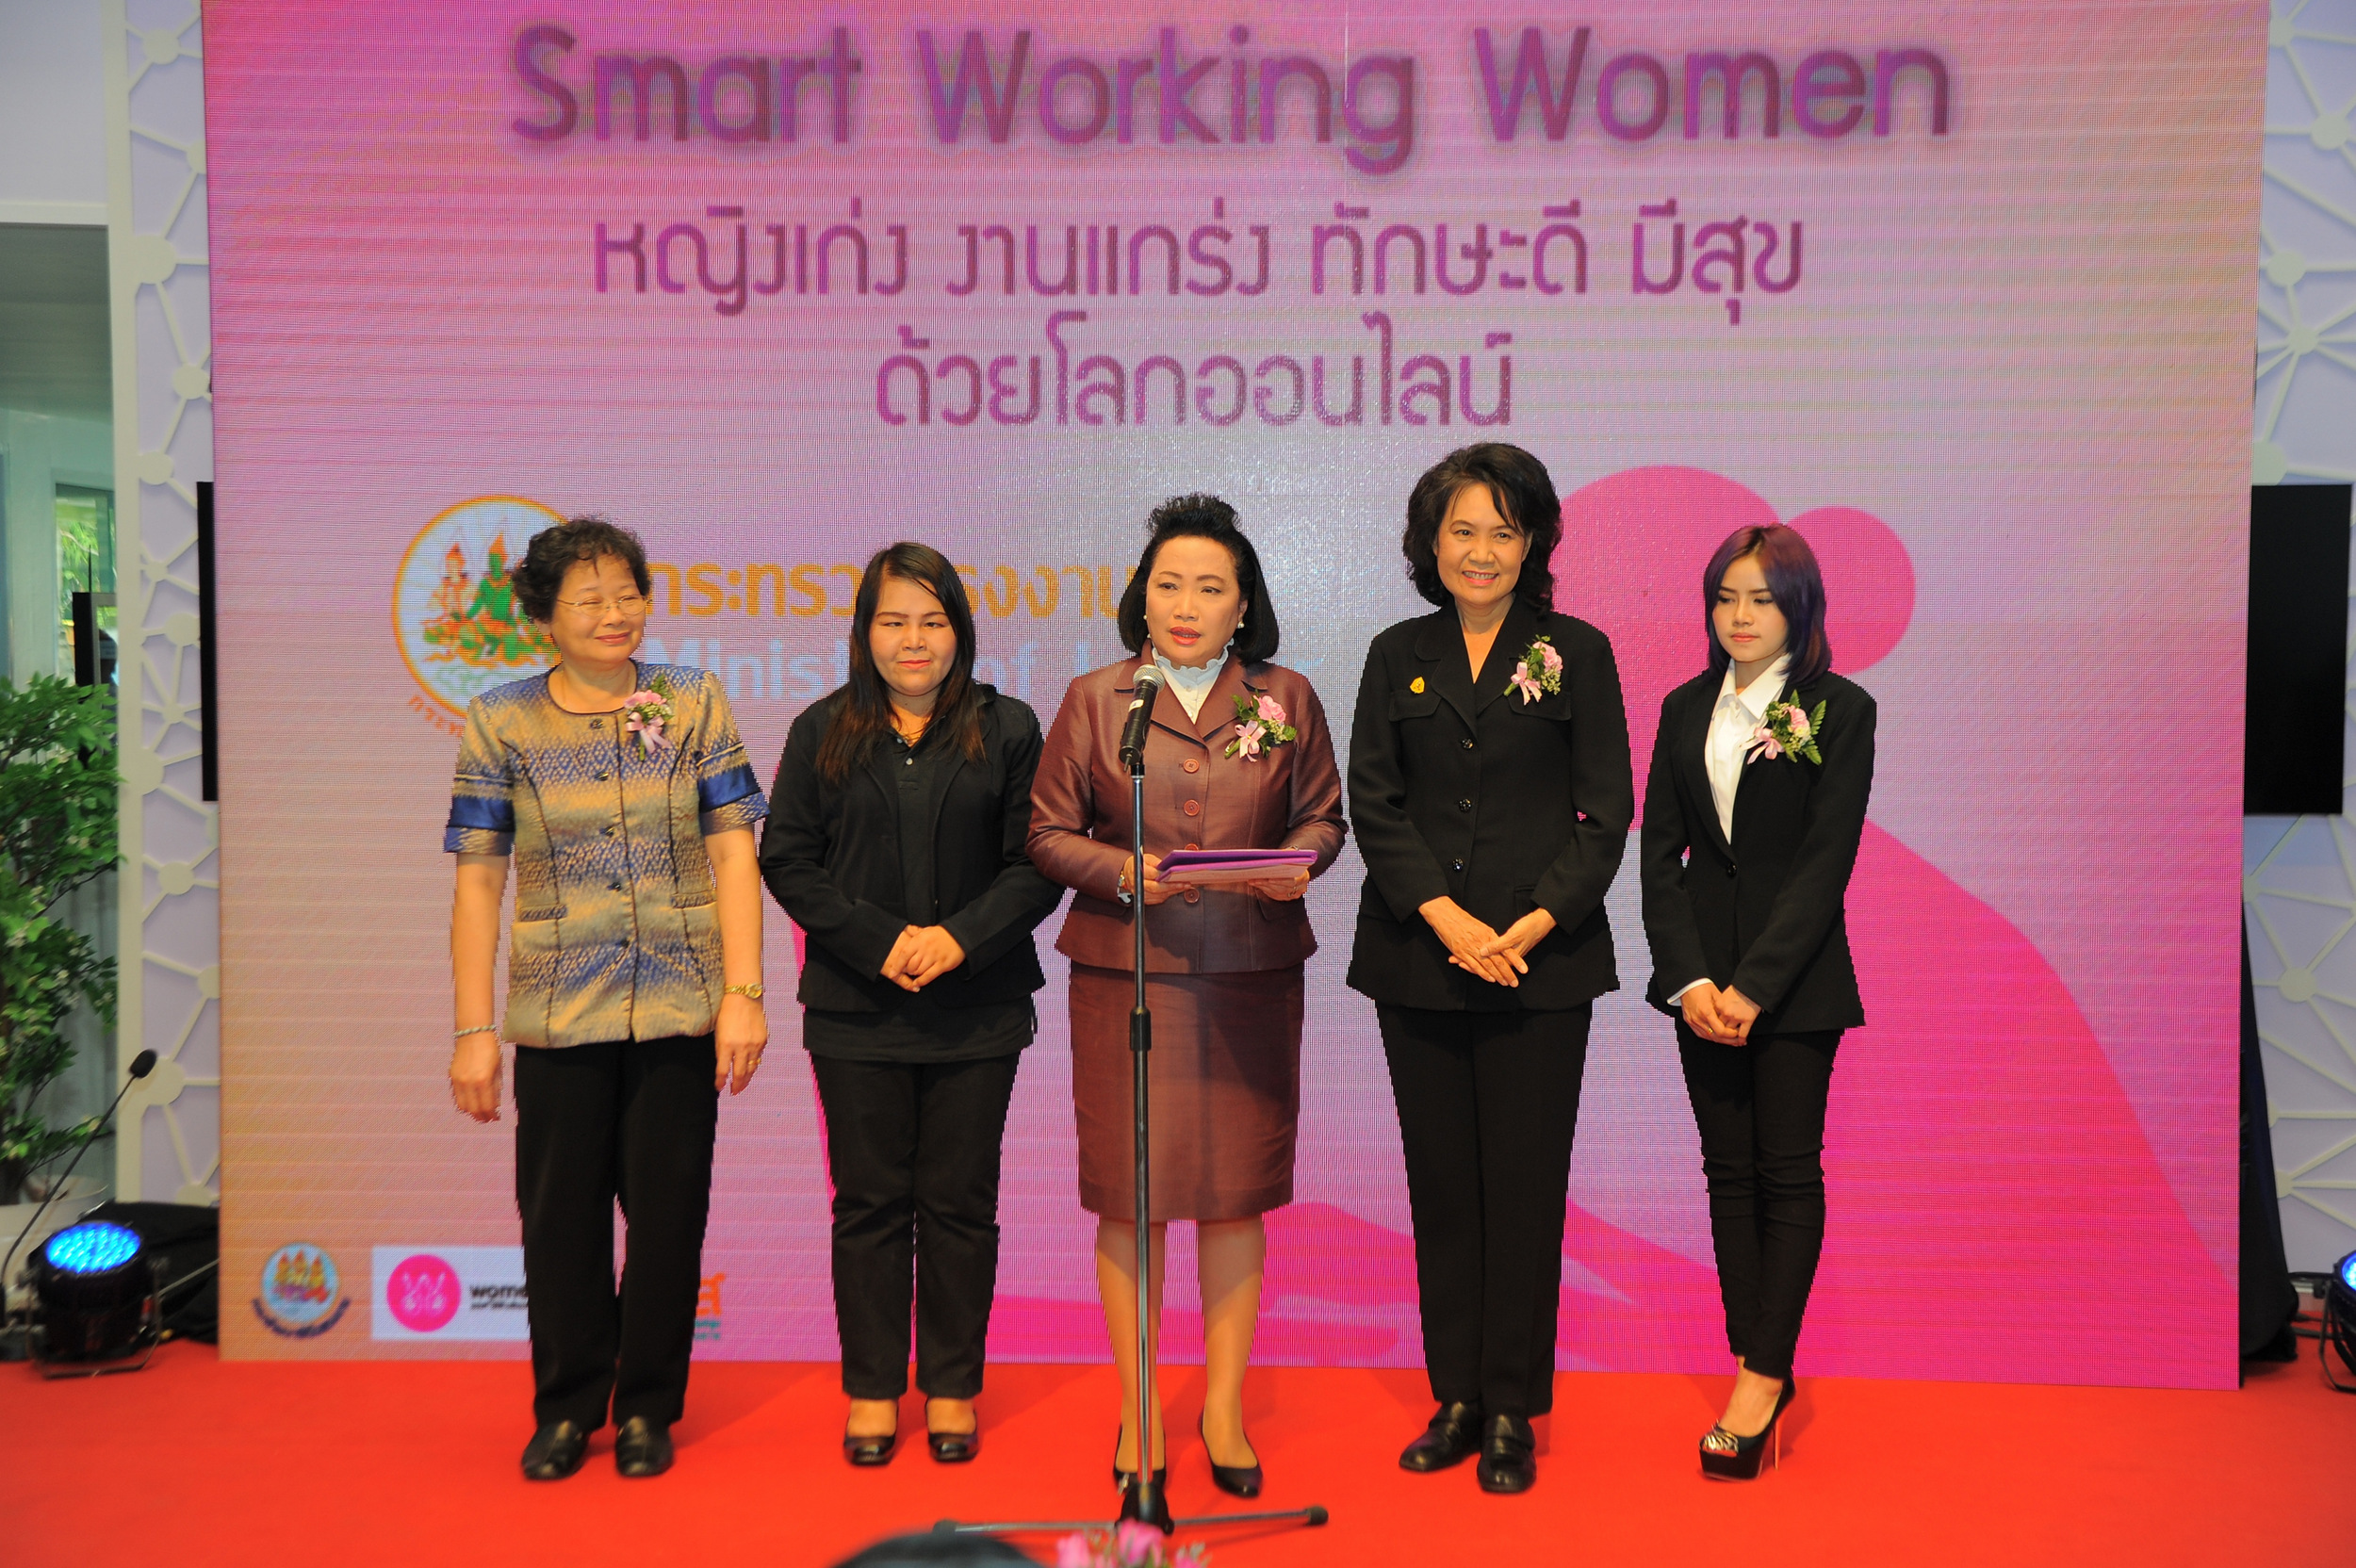 เปิดเว็บไซต์ “วูเมนวิล” ช่วยหญิงเข้าถึงงาน thaihealth